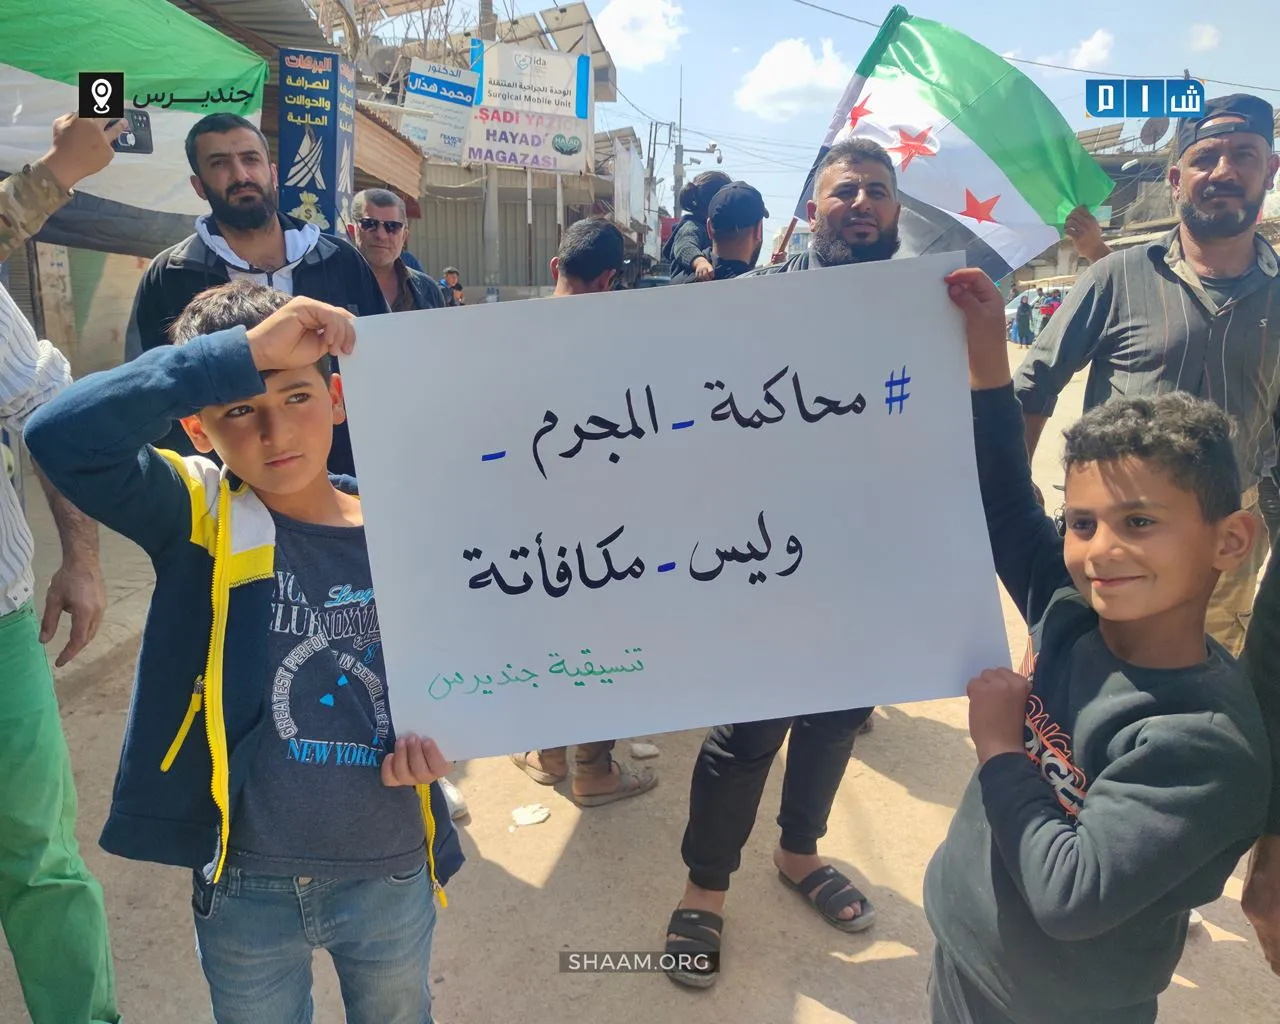 وقفة احتجاجية للأحرار في مدينة #جنديرس رفضا للتطبيع مع المجرم  الأسد